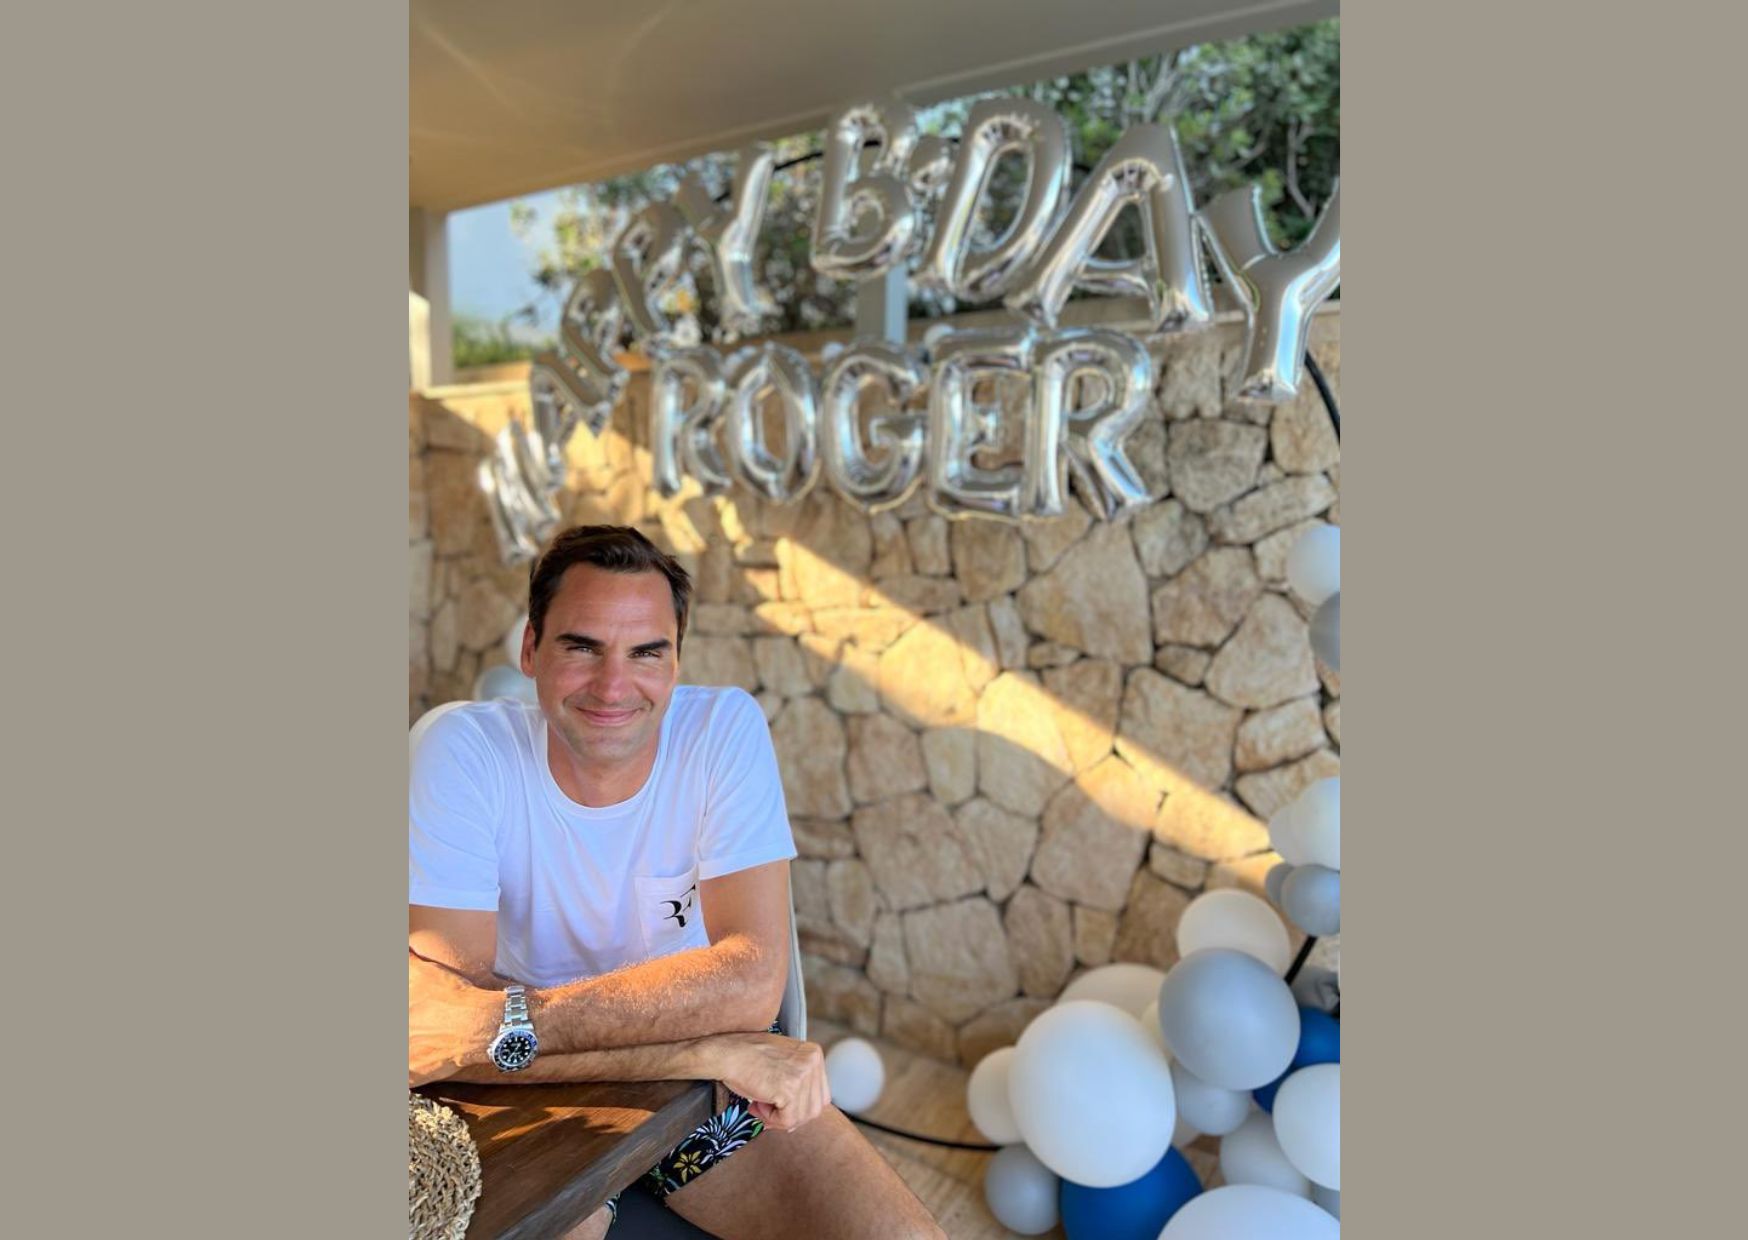 Roger Federer Pensiun